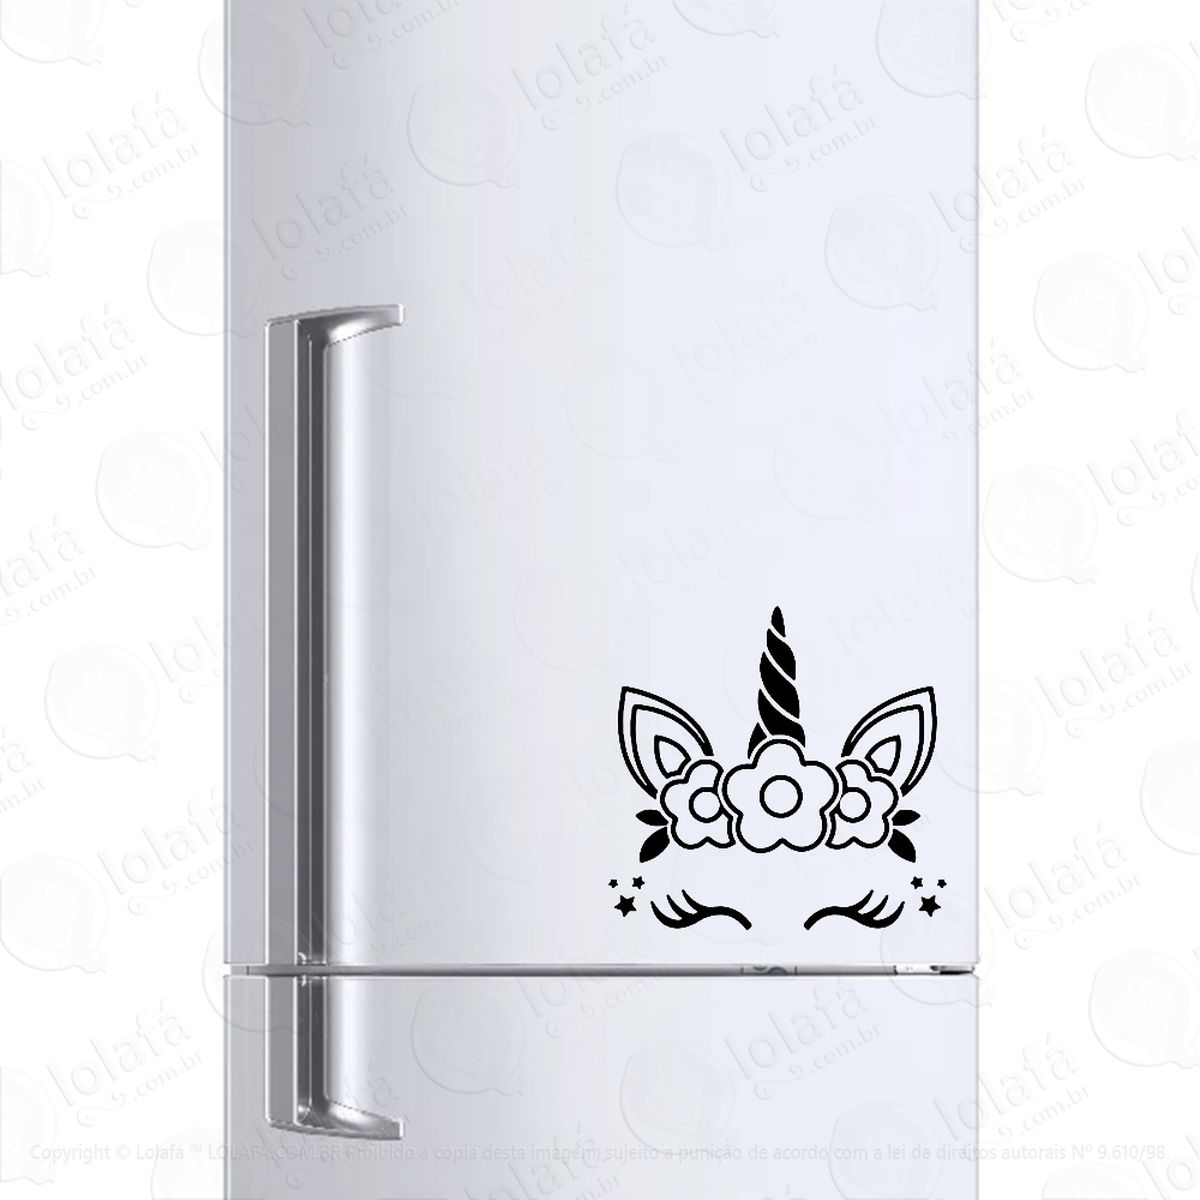 adesivo geladeira frigobar cervejeira unicórnio florido mod:151